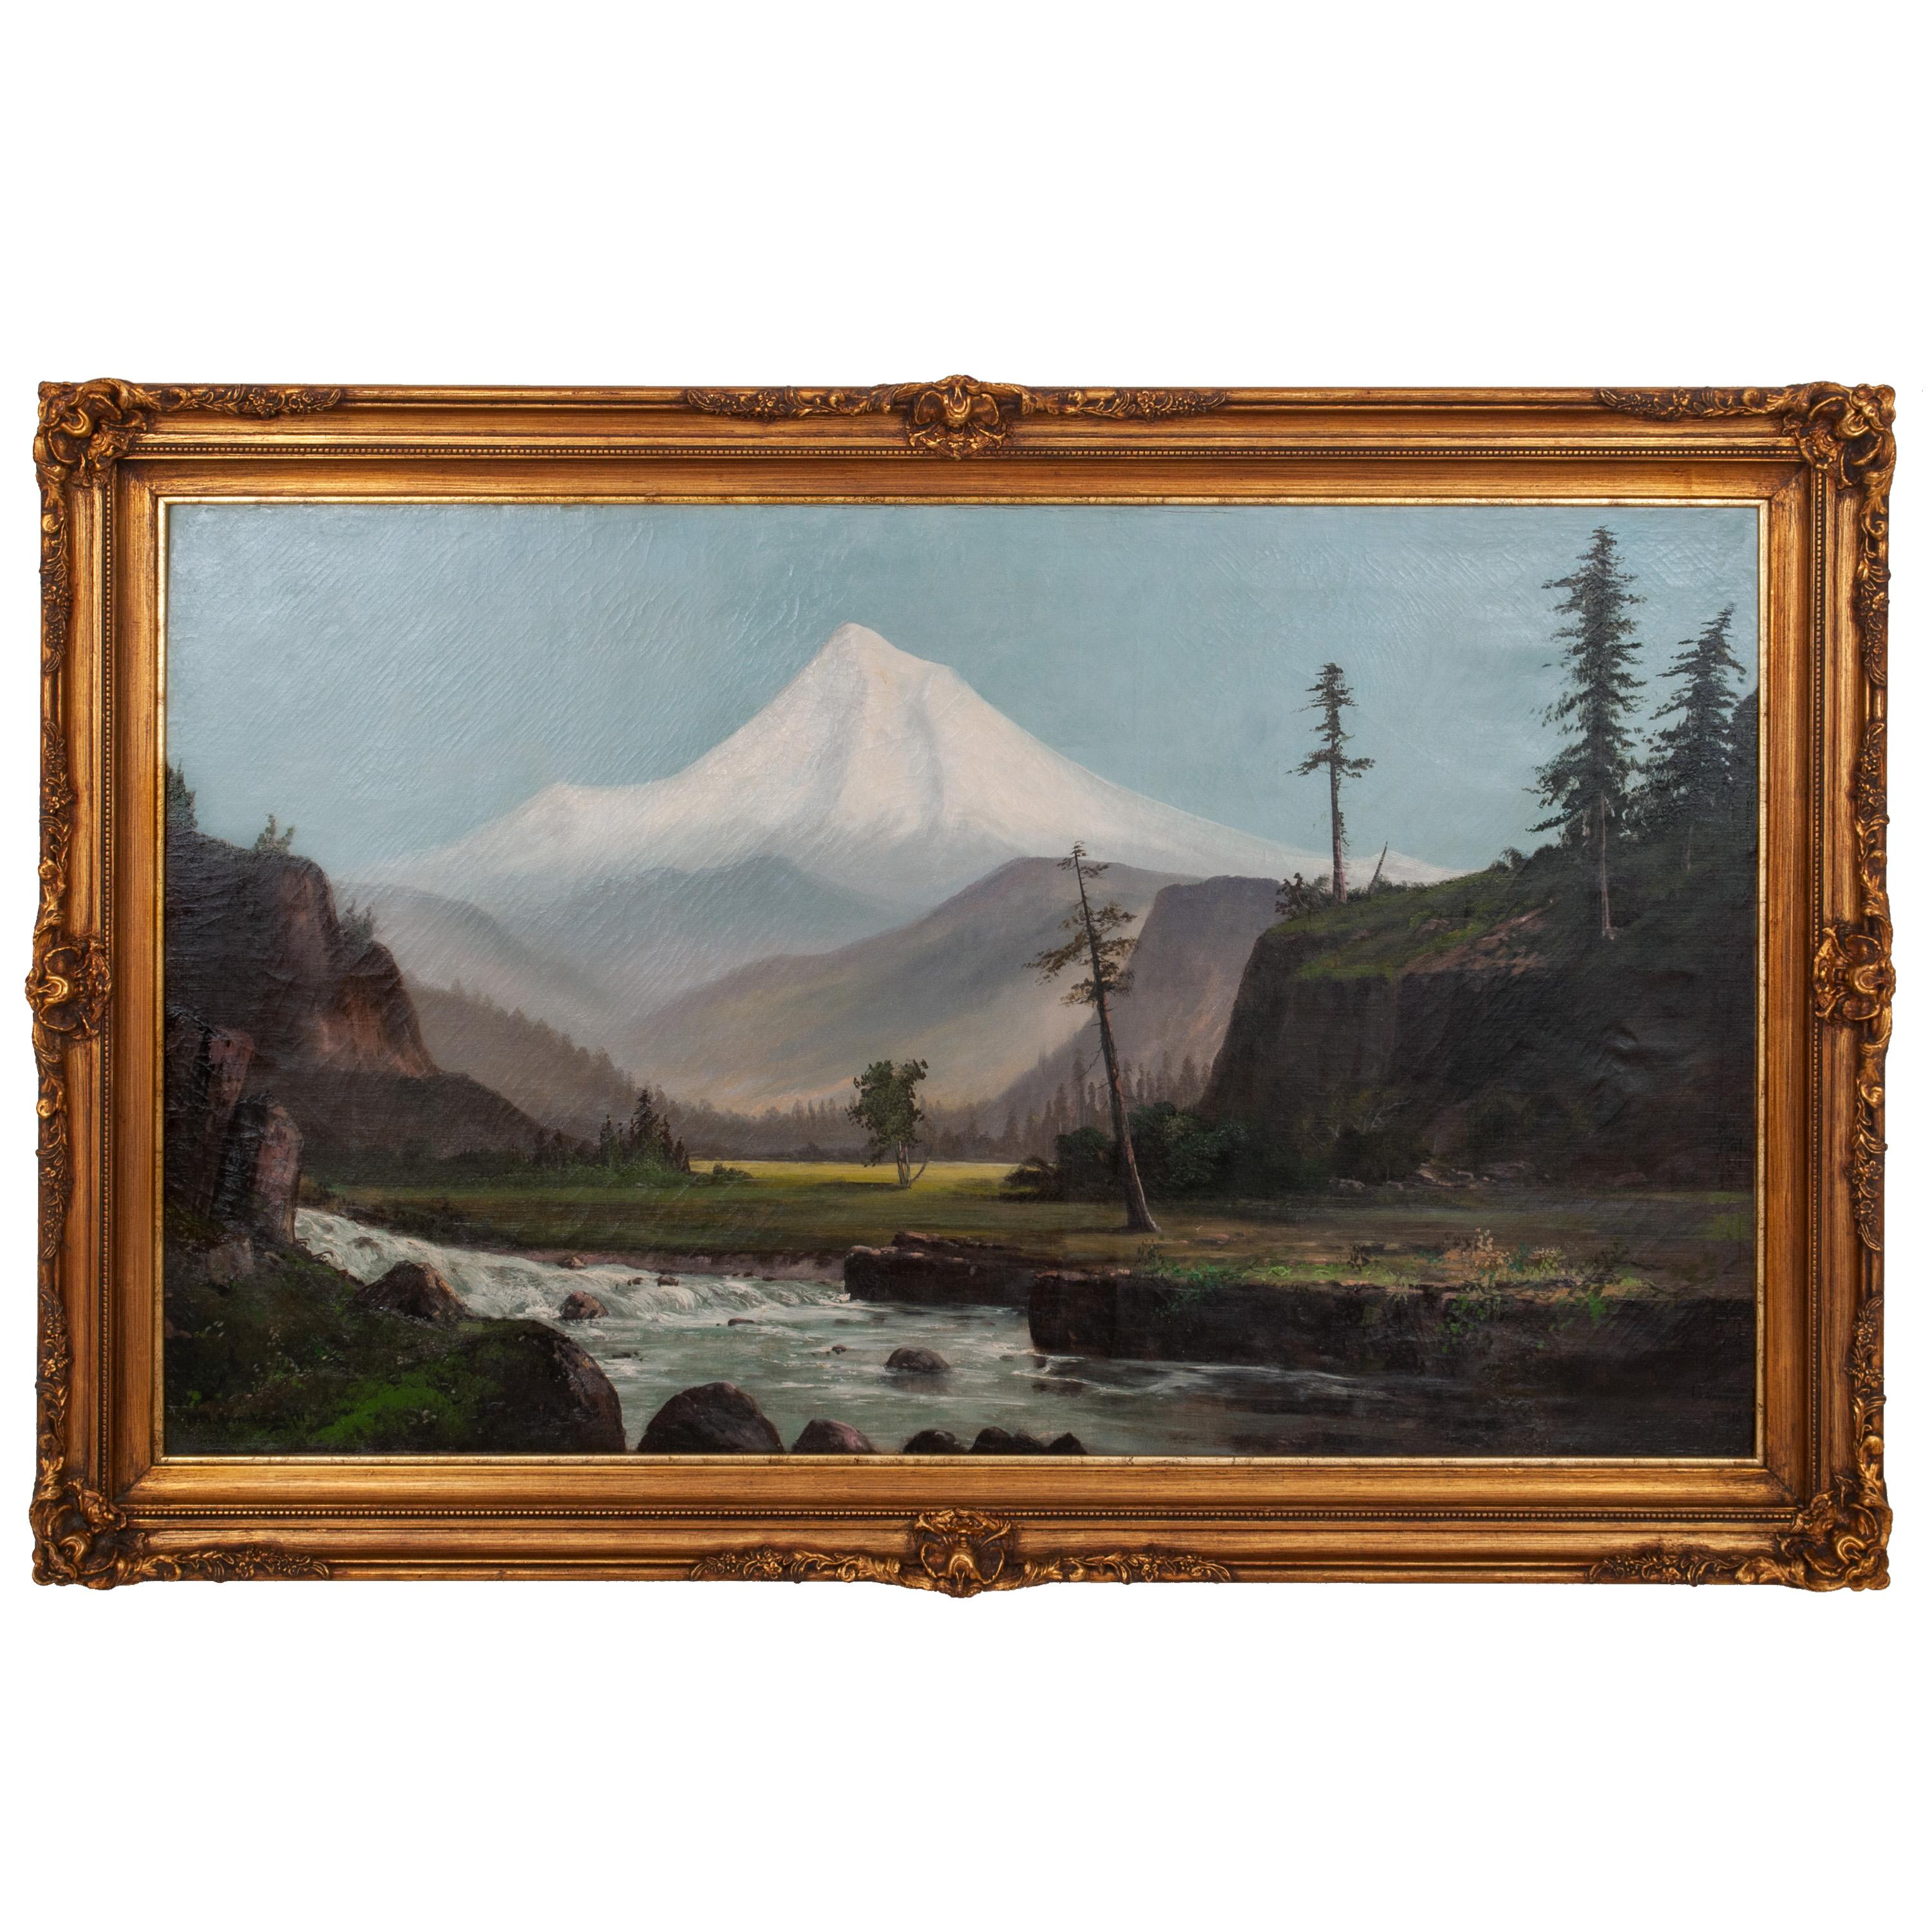 Landscape Painting William Weaver Armstrong  - Peinture à l'huile ancienne de William Weaver Armstrong, paysage de mont Hood dans l'Oregon, 1885